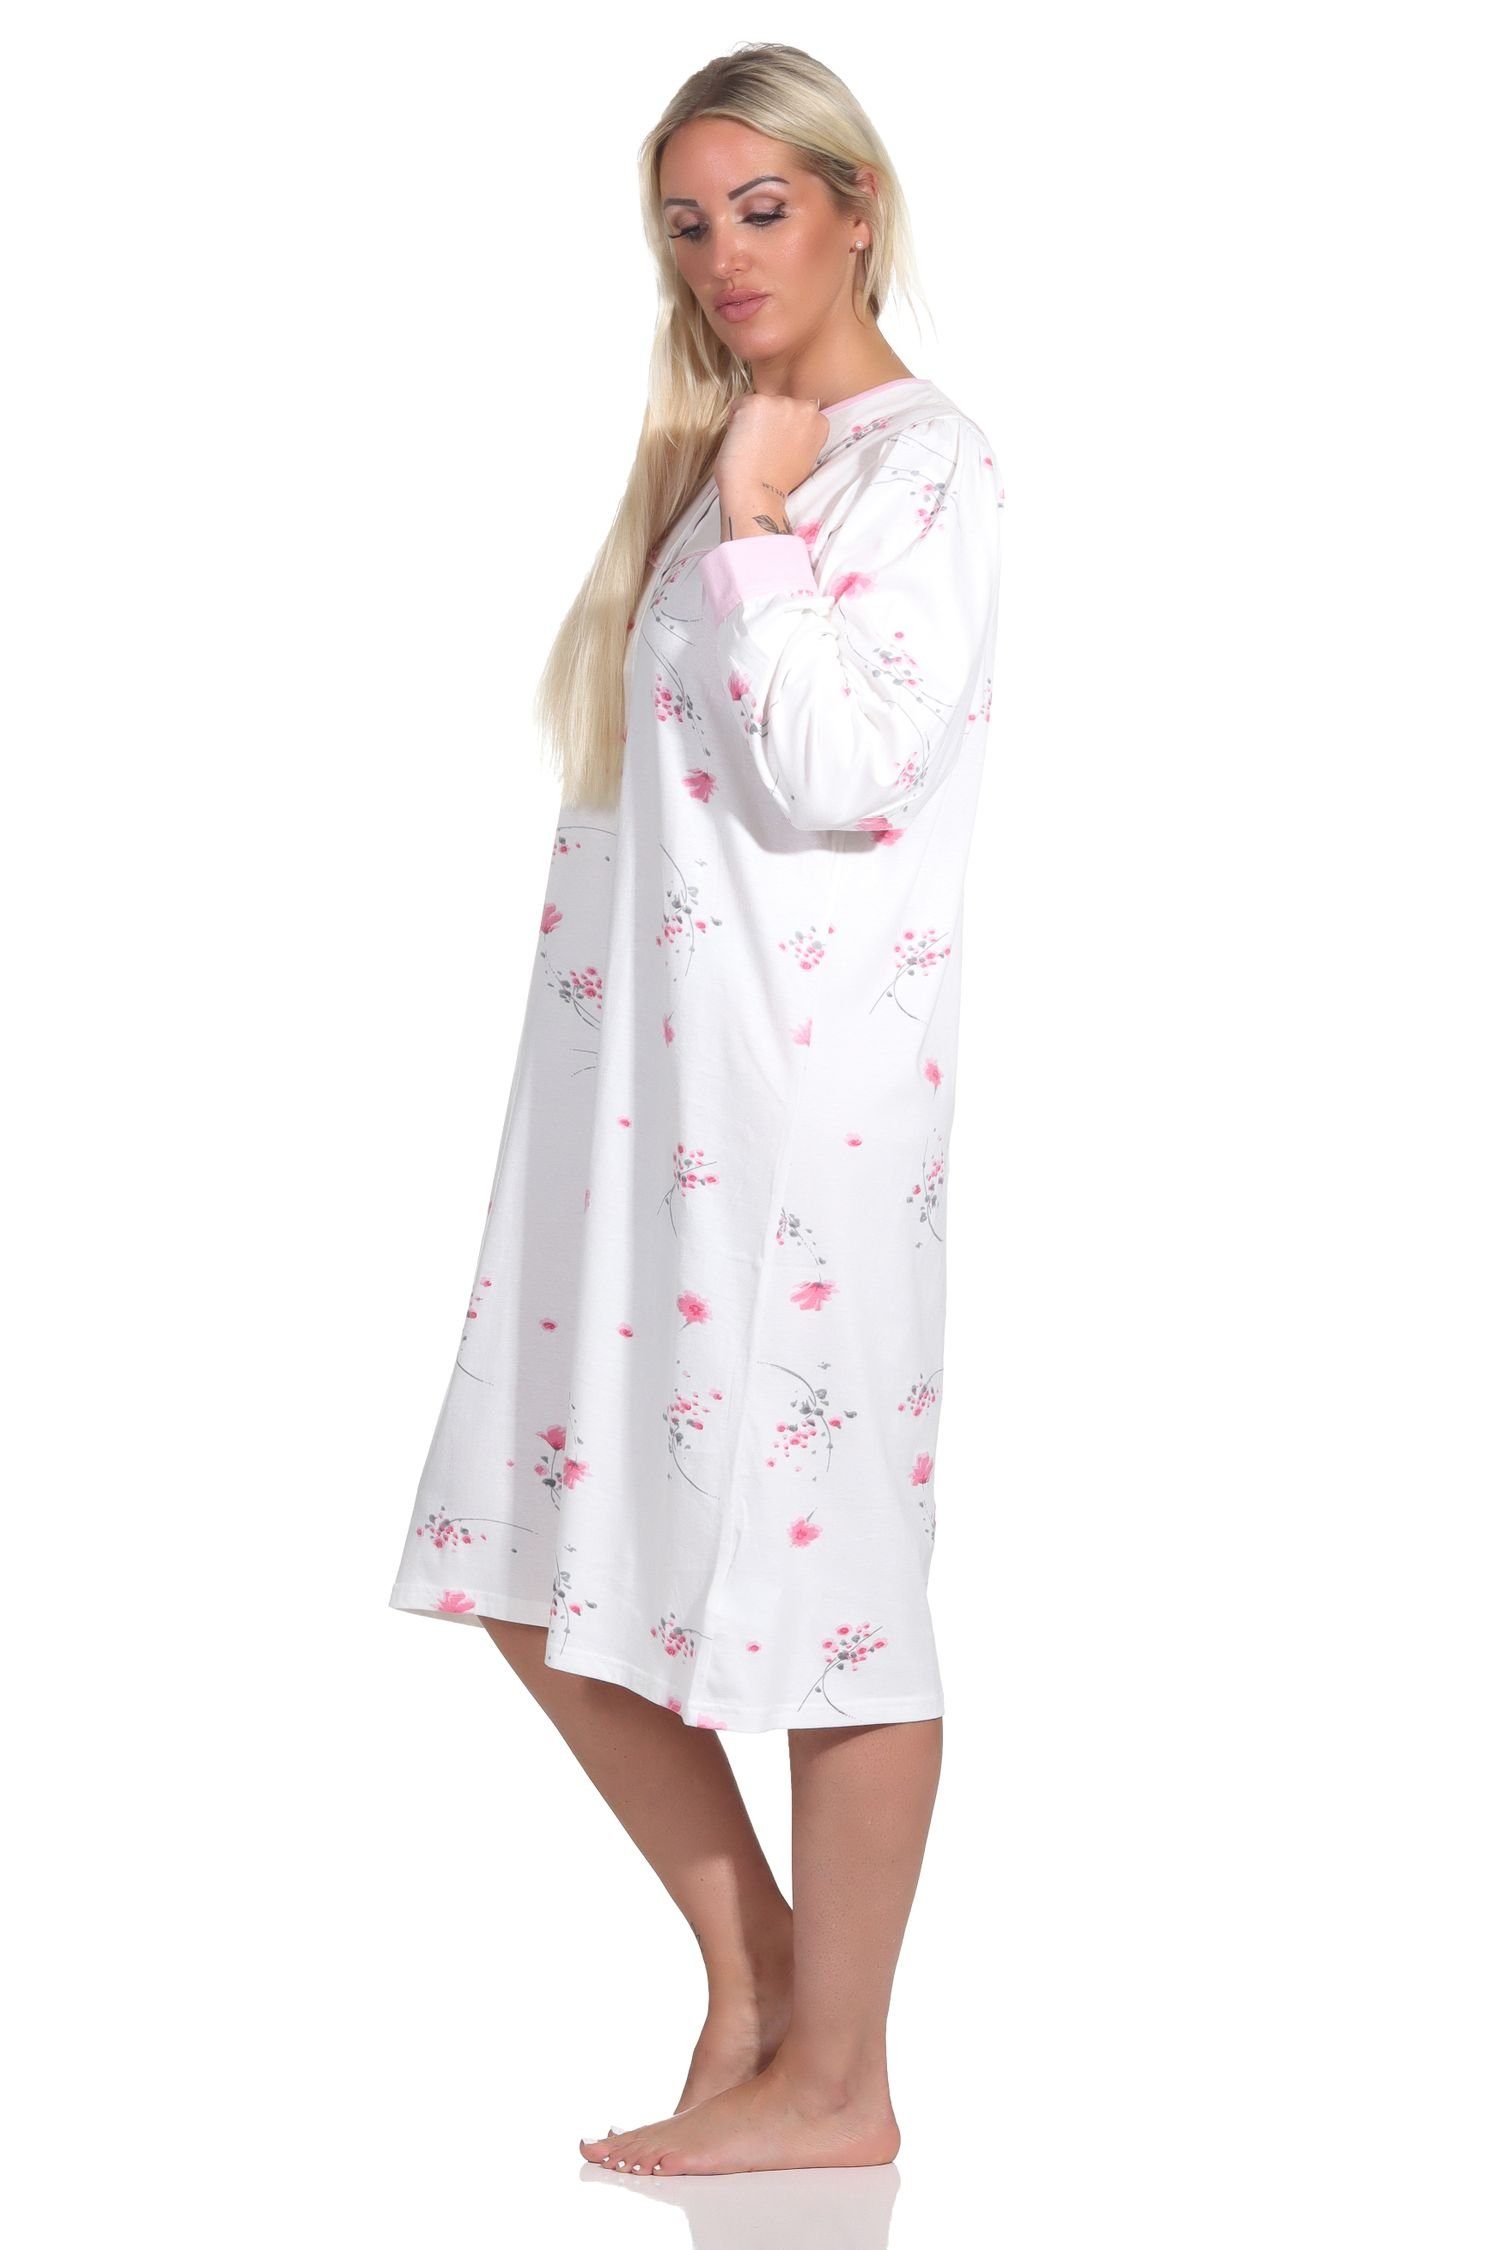 Hals Normann Nachthemd Nachthemd Knopfleiste am Frauliches langarm rosa mit Damen